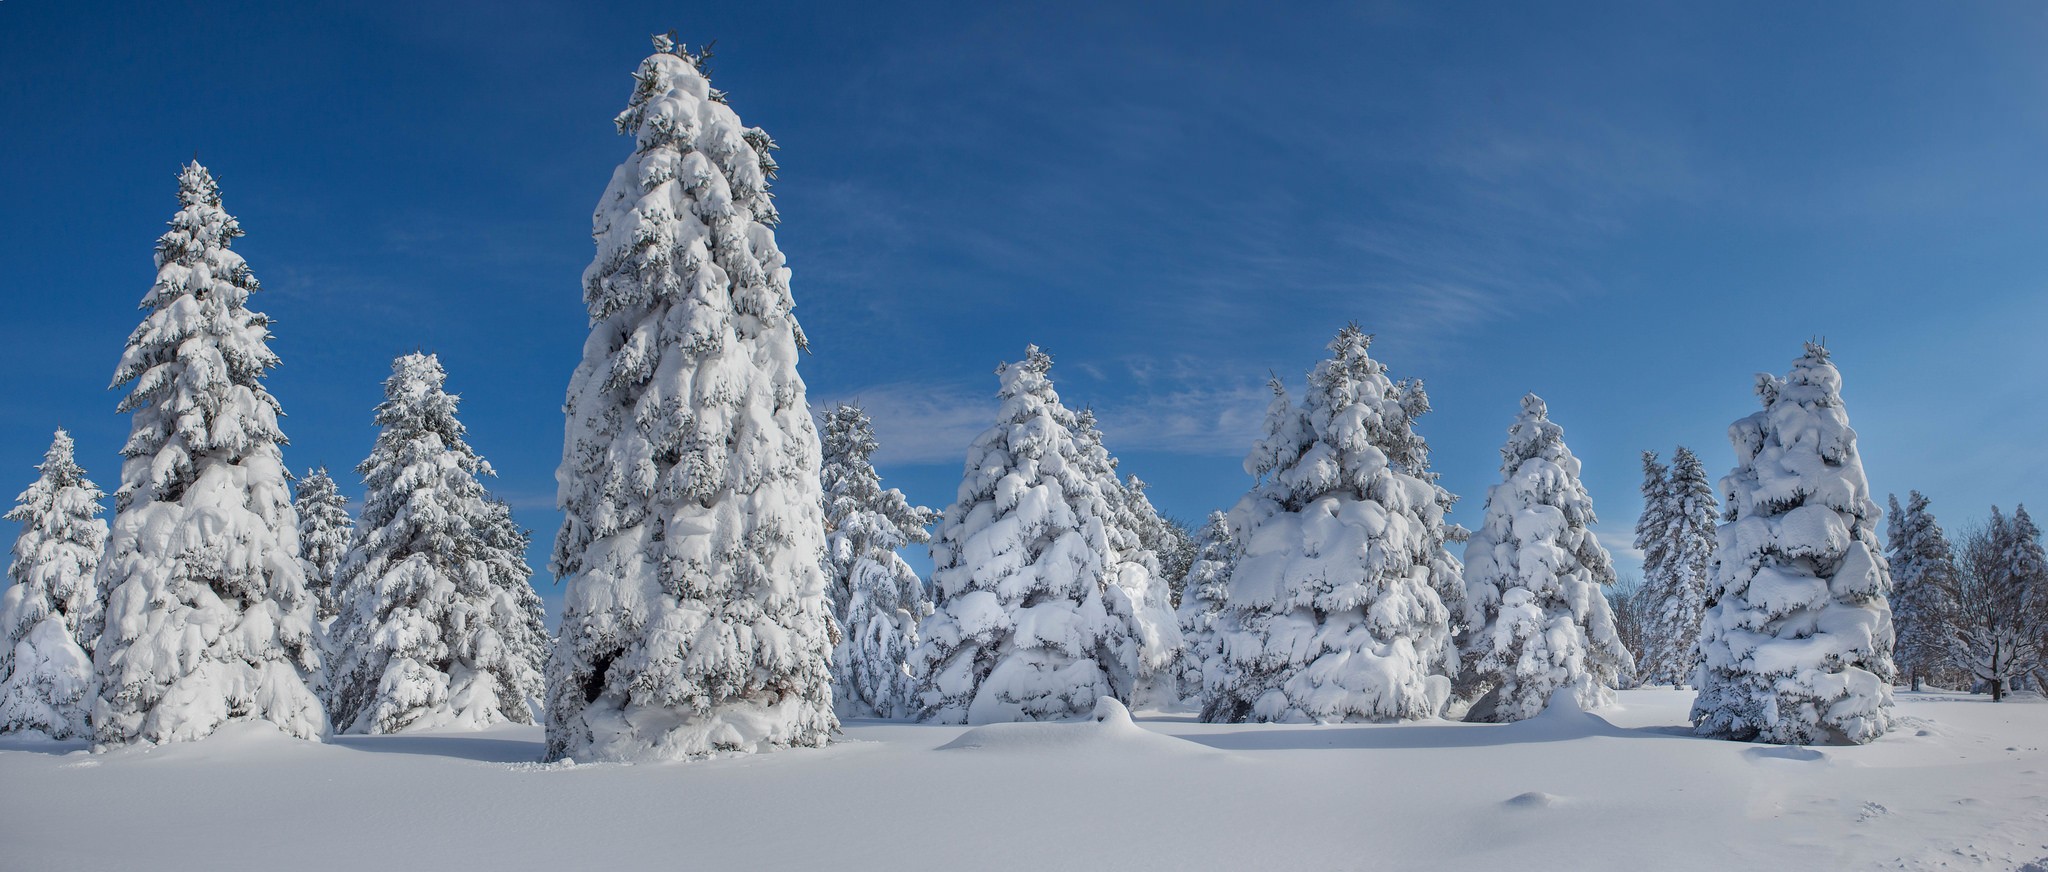 10 conseils pour améliorer vos photos d'hiver (I)